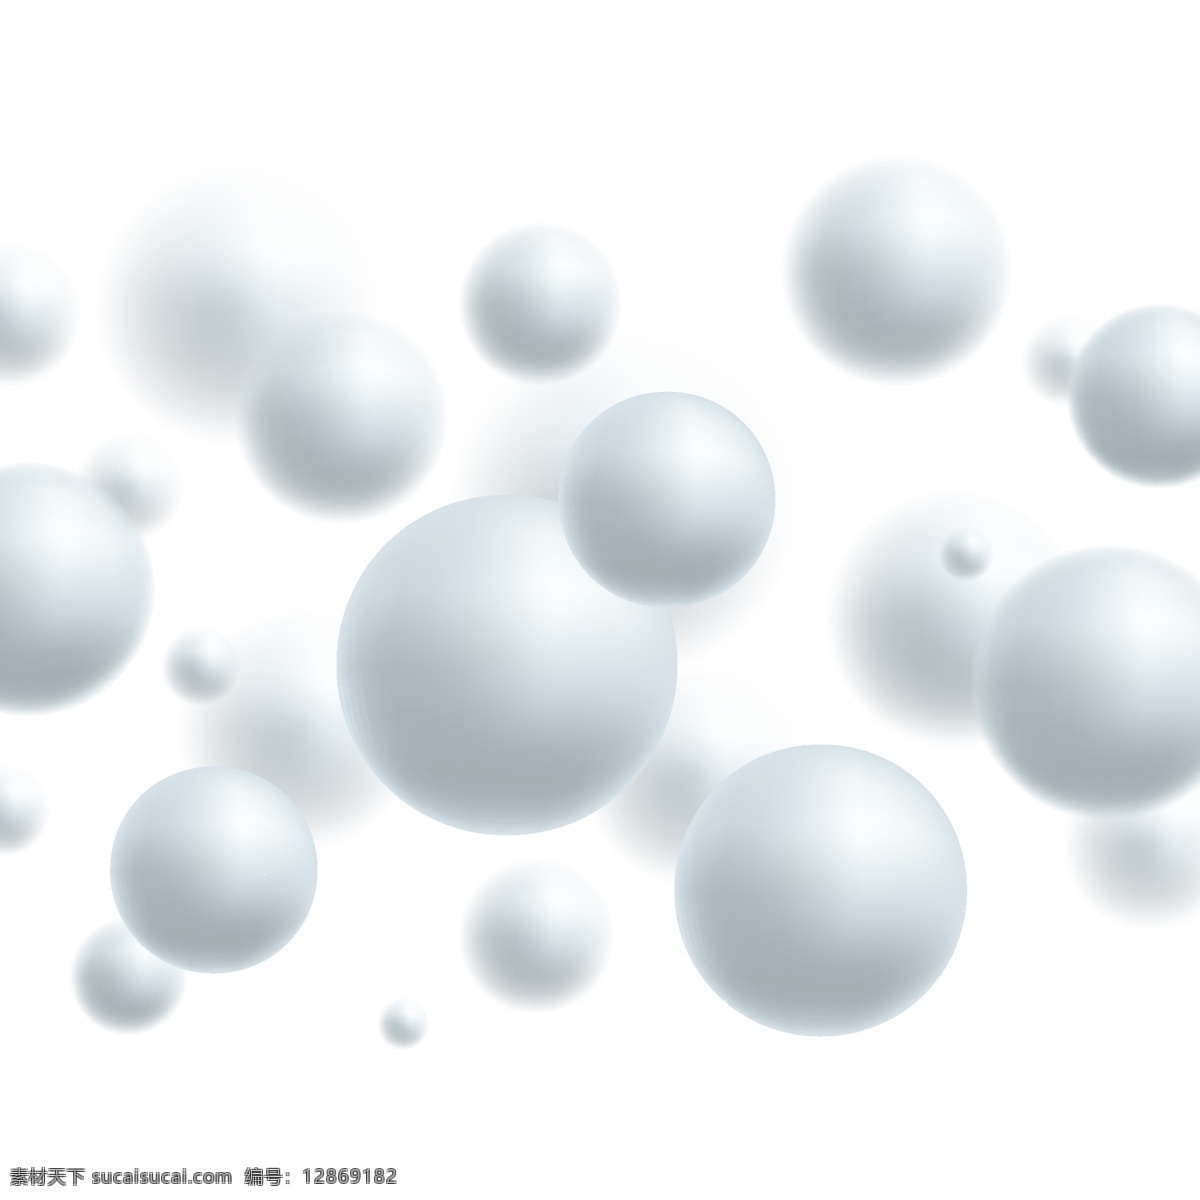 3d圆球 球 圆球 红色球体 3d球立体球 球体 漂浮的球 抽象背景 创意背景 矢量素材 3d球 球形分子 动感 球形背景